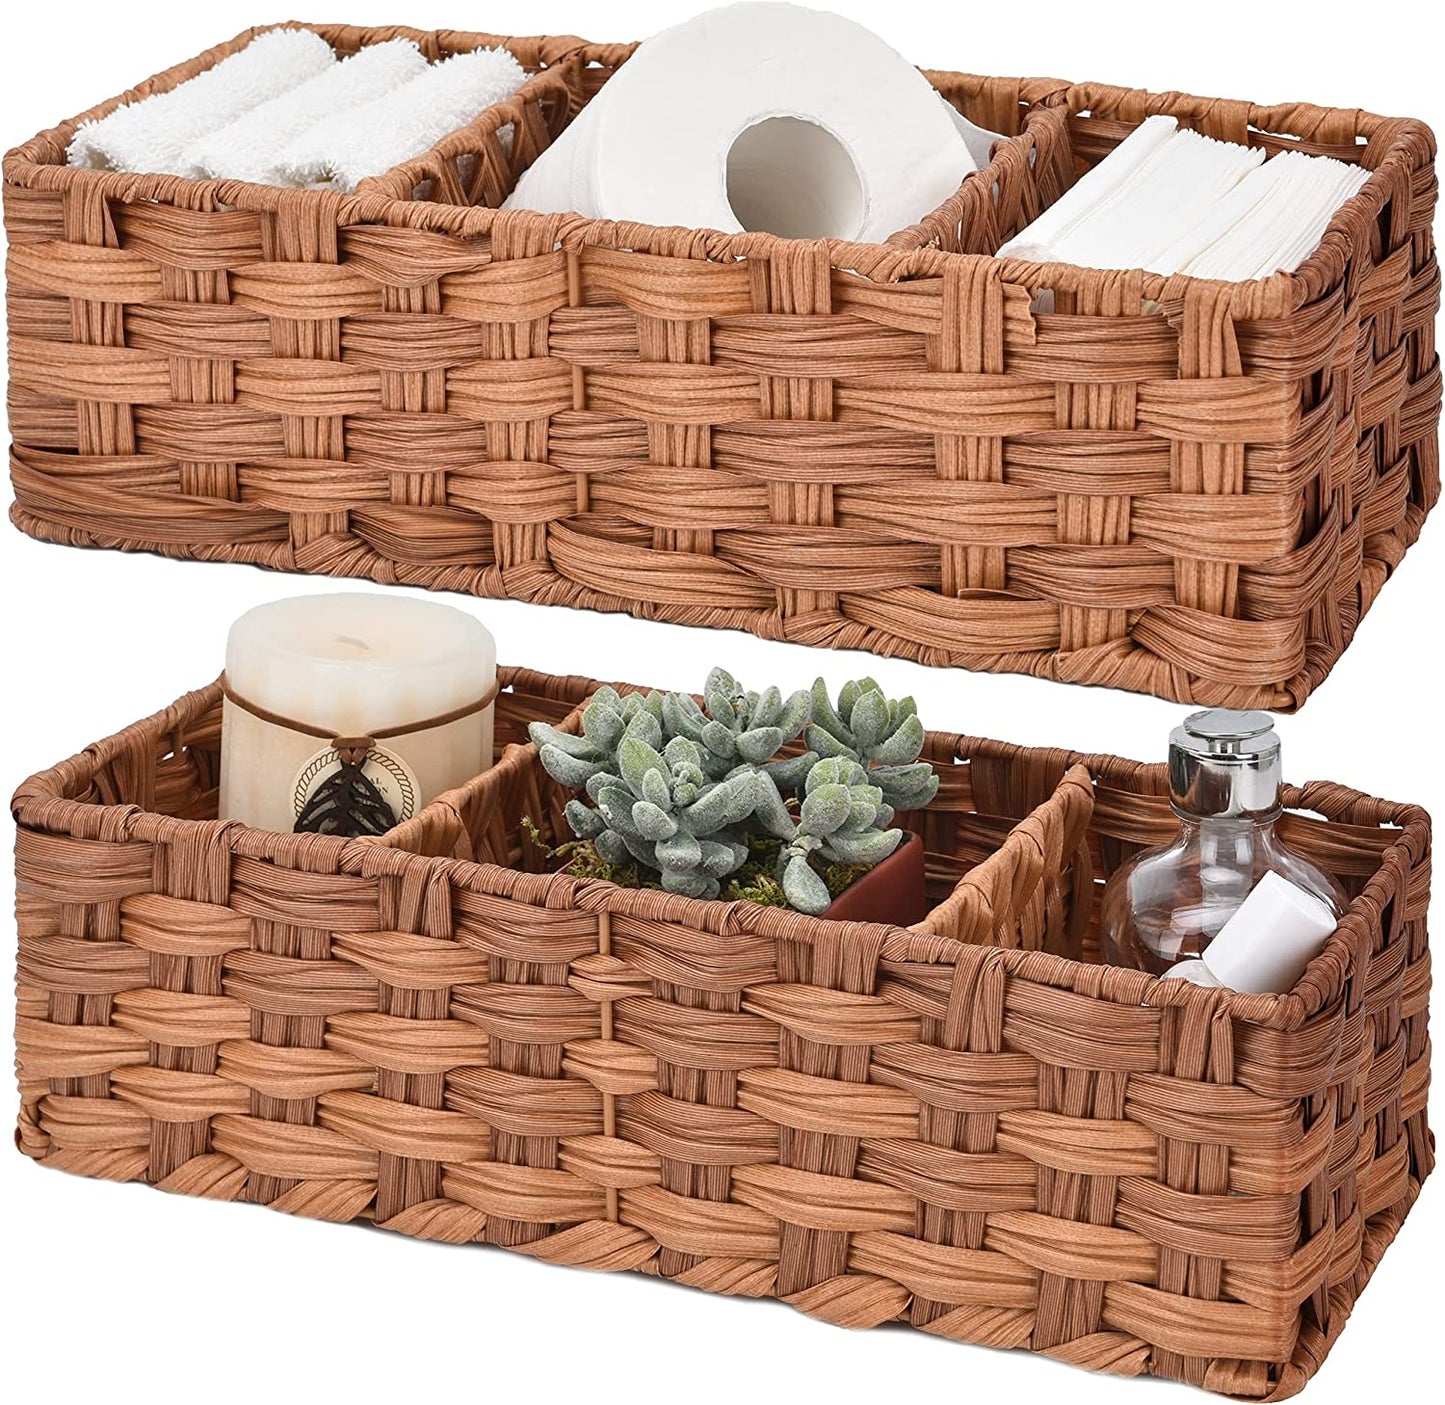 Bathroom Baskets for Organizing, Toilet Storage Basket Waterproof, Wicker Tank Basket with 2 Dividers, Brown, 2-Pack